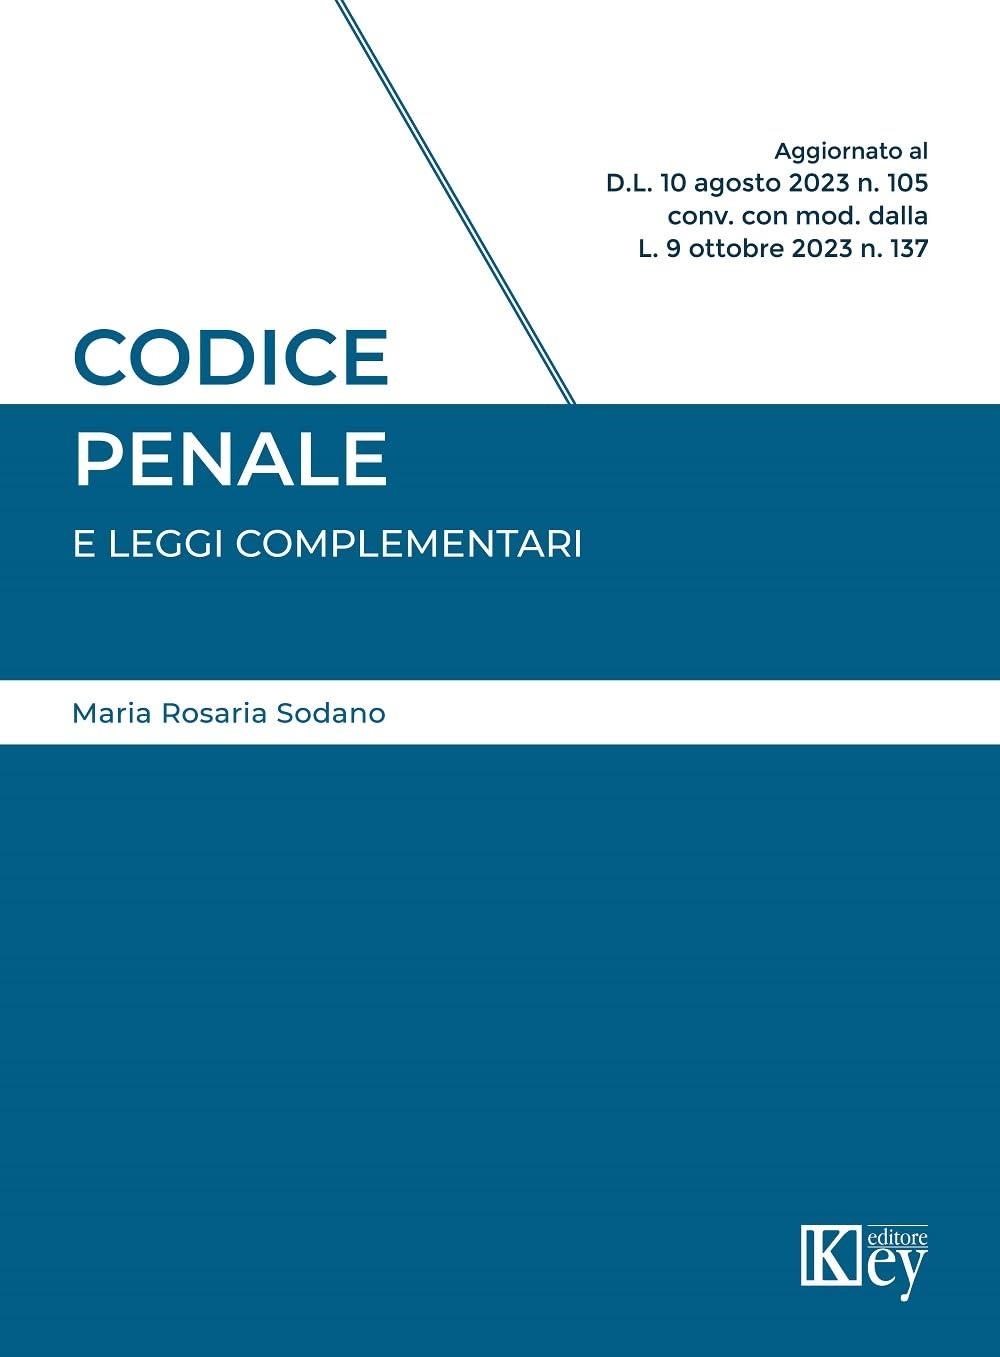 Libri Sodano Maria Rosaria - Codice Penale E Leggi Complementari 2023 NUOVO SIGILLATO, EDIZIONE DEL 24/10/2023 SUBITO DISPONIBILE